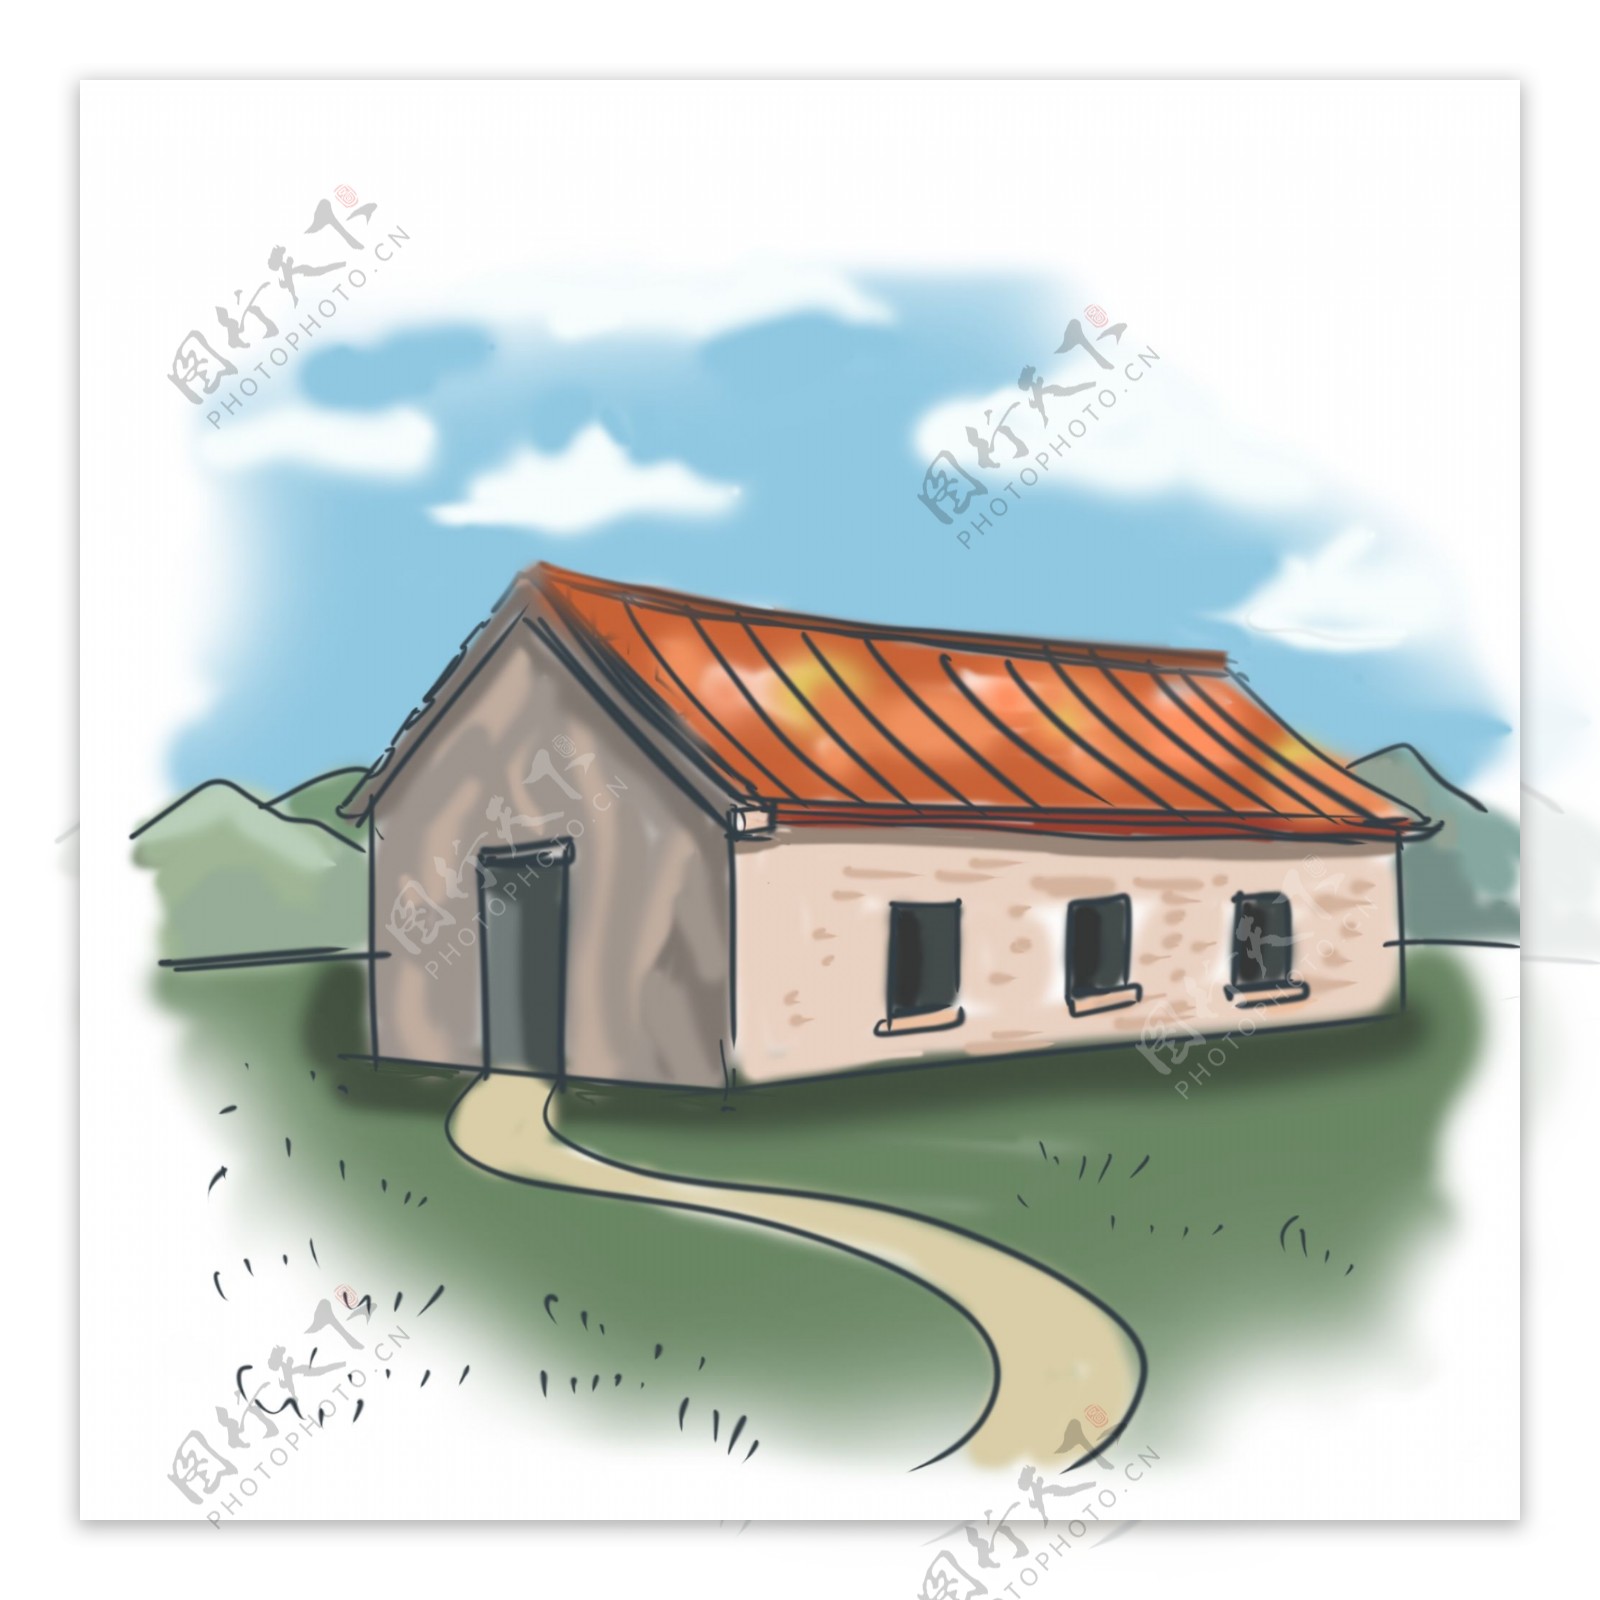 房屋主题砖房卡通手绘